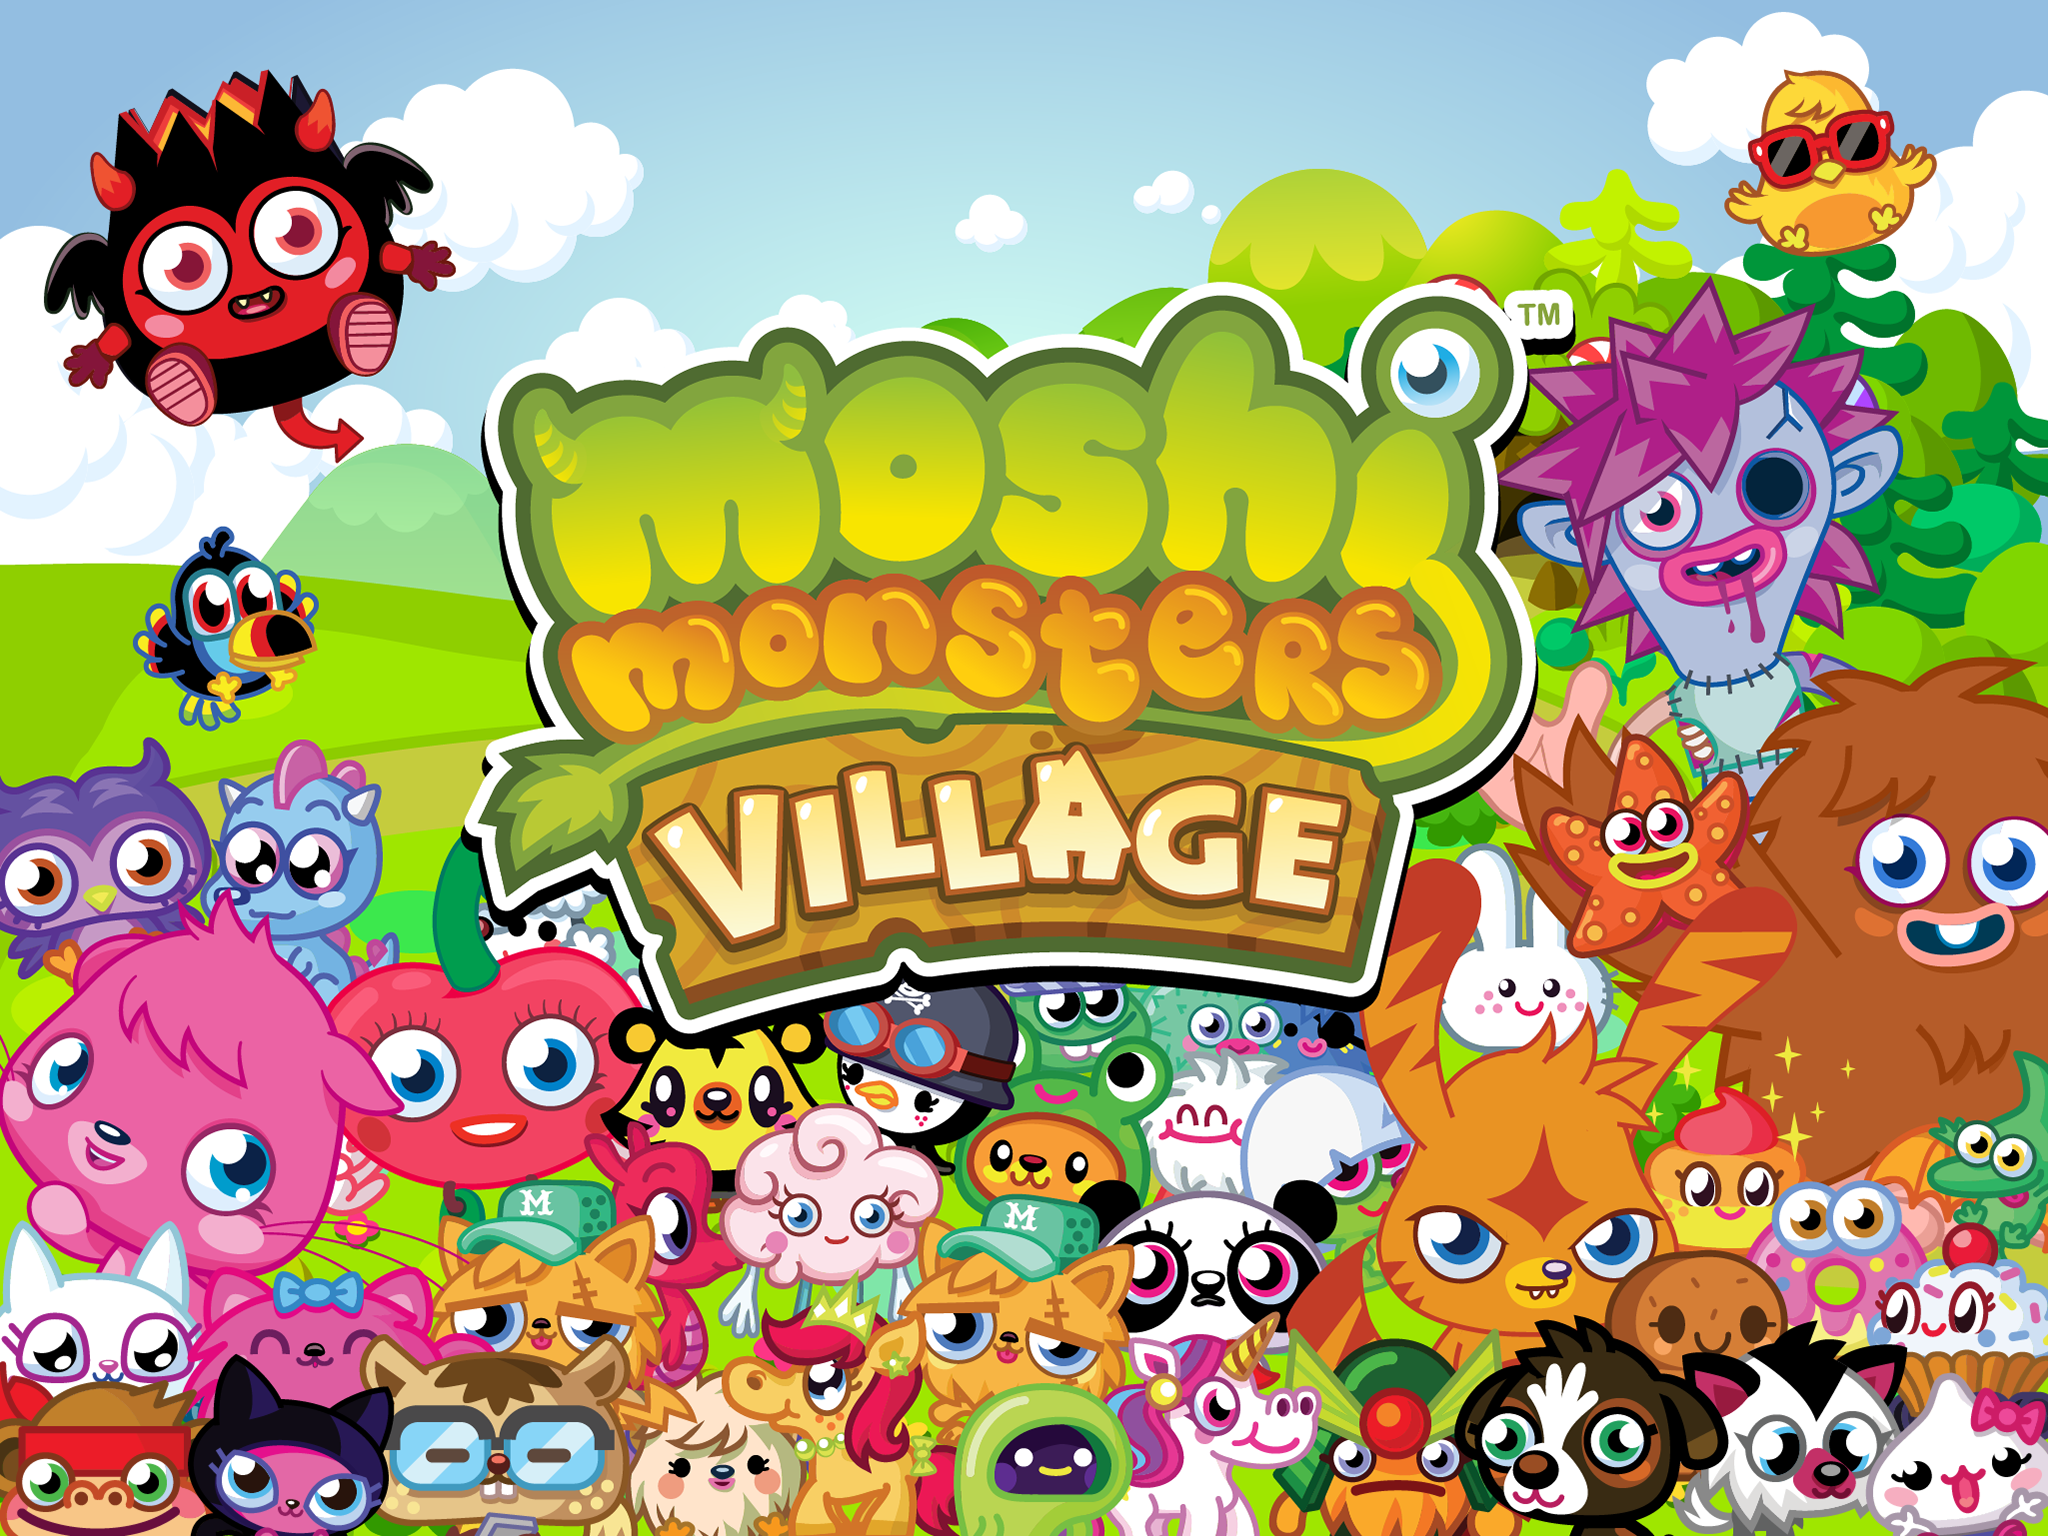 Village monsters. Moshi Monsters. Moshi Monsters Moshi Monsters. Moshi Monsters игра. Чемодан Moshi Monsters.